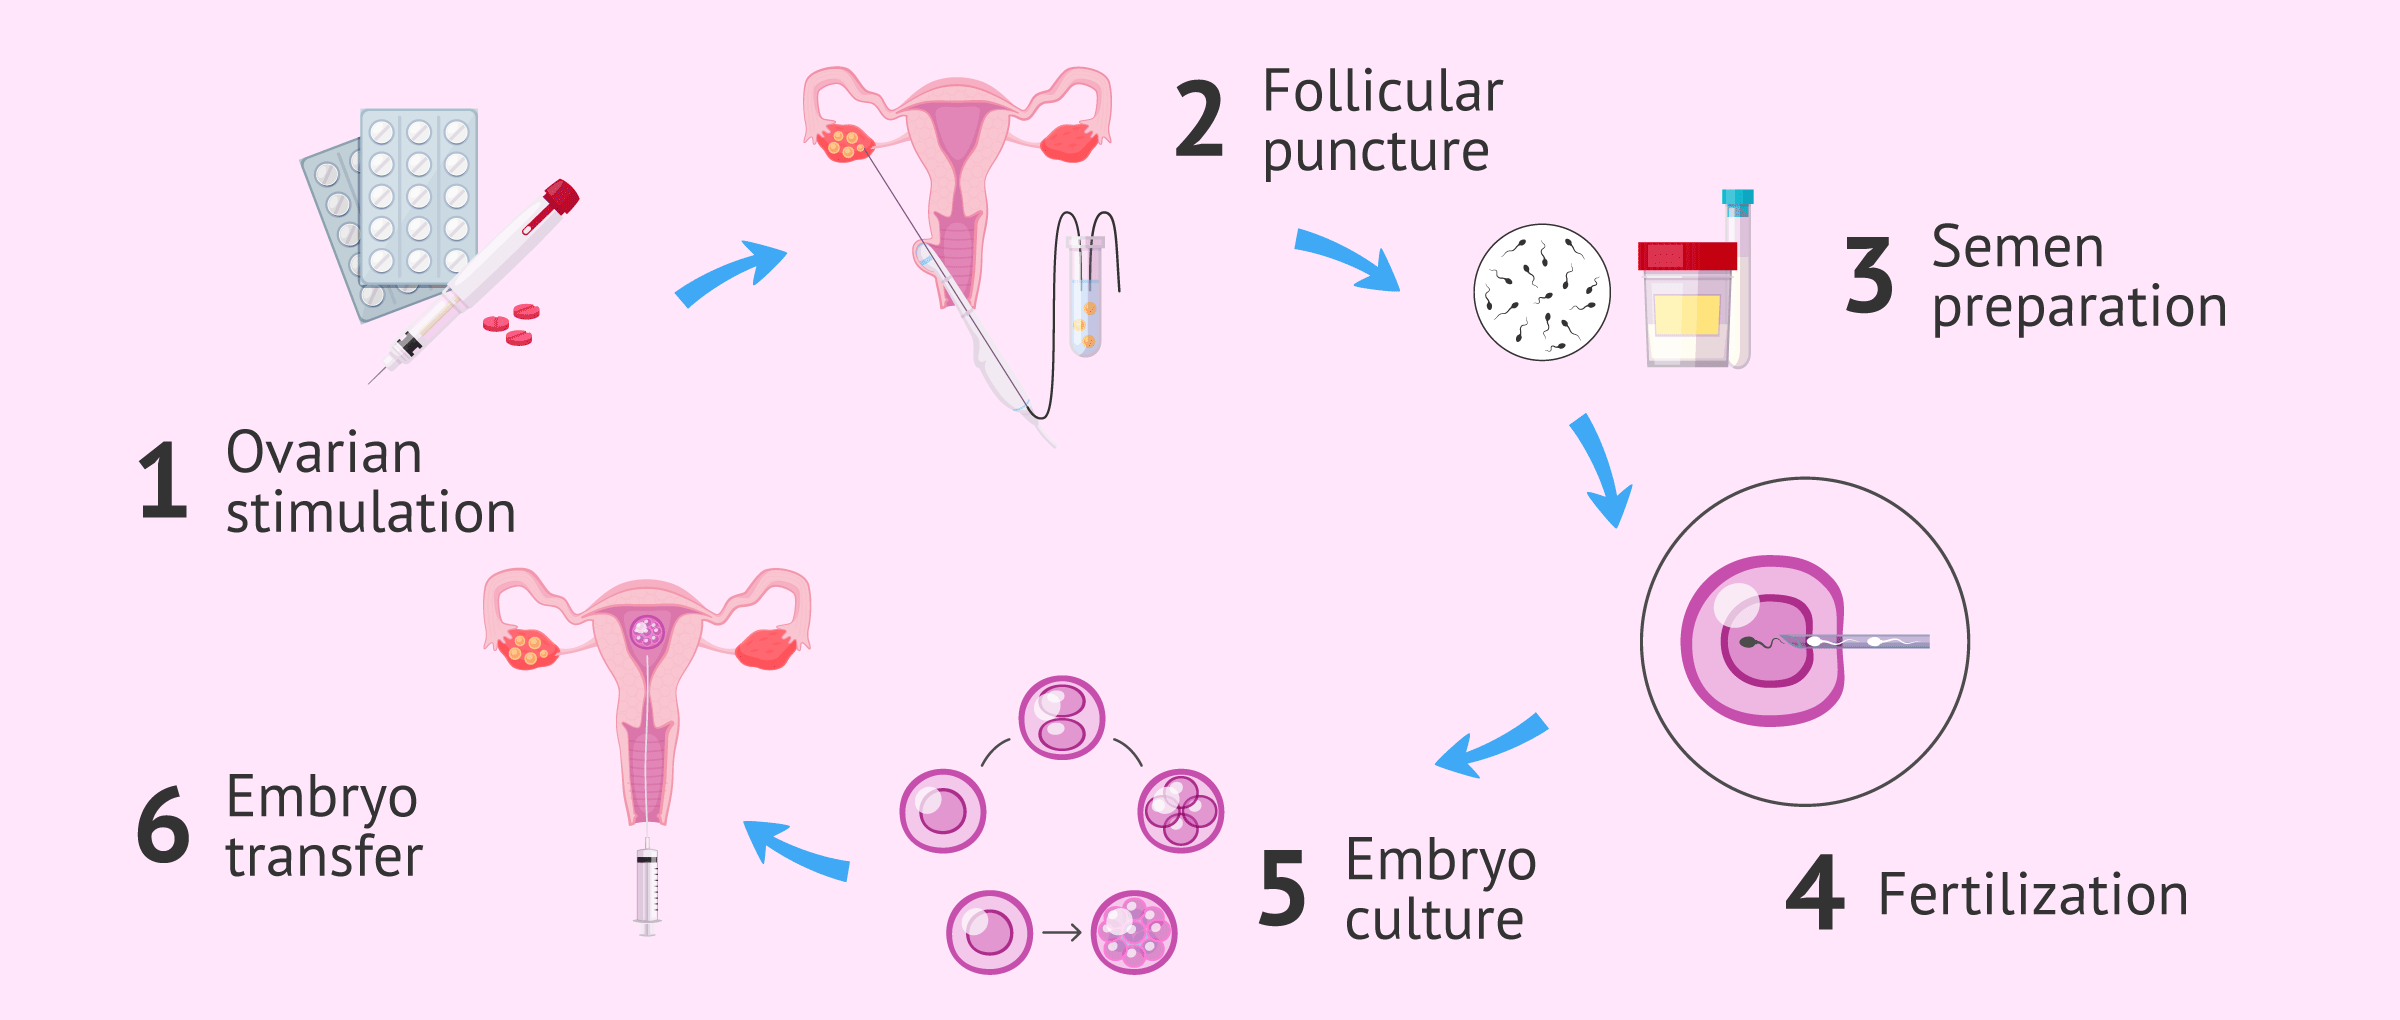 5 dias post transferencia embrionaria